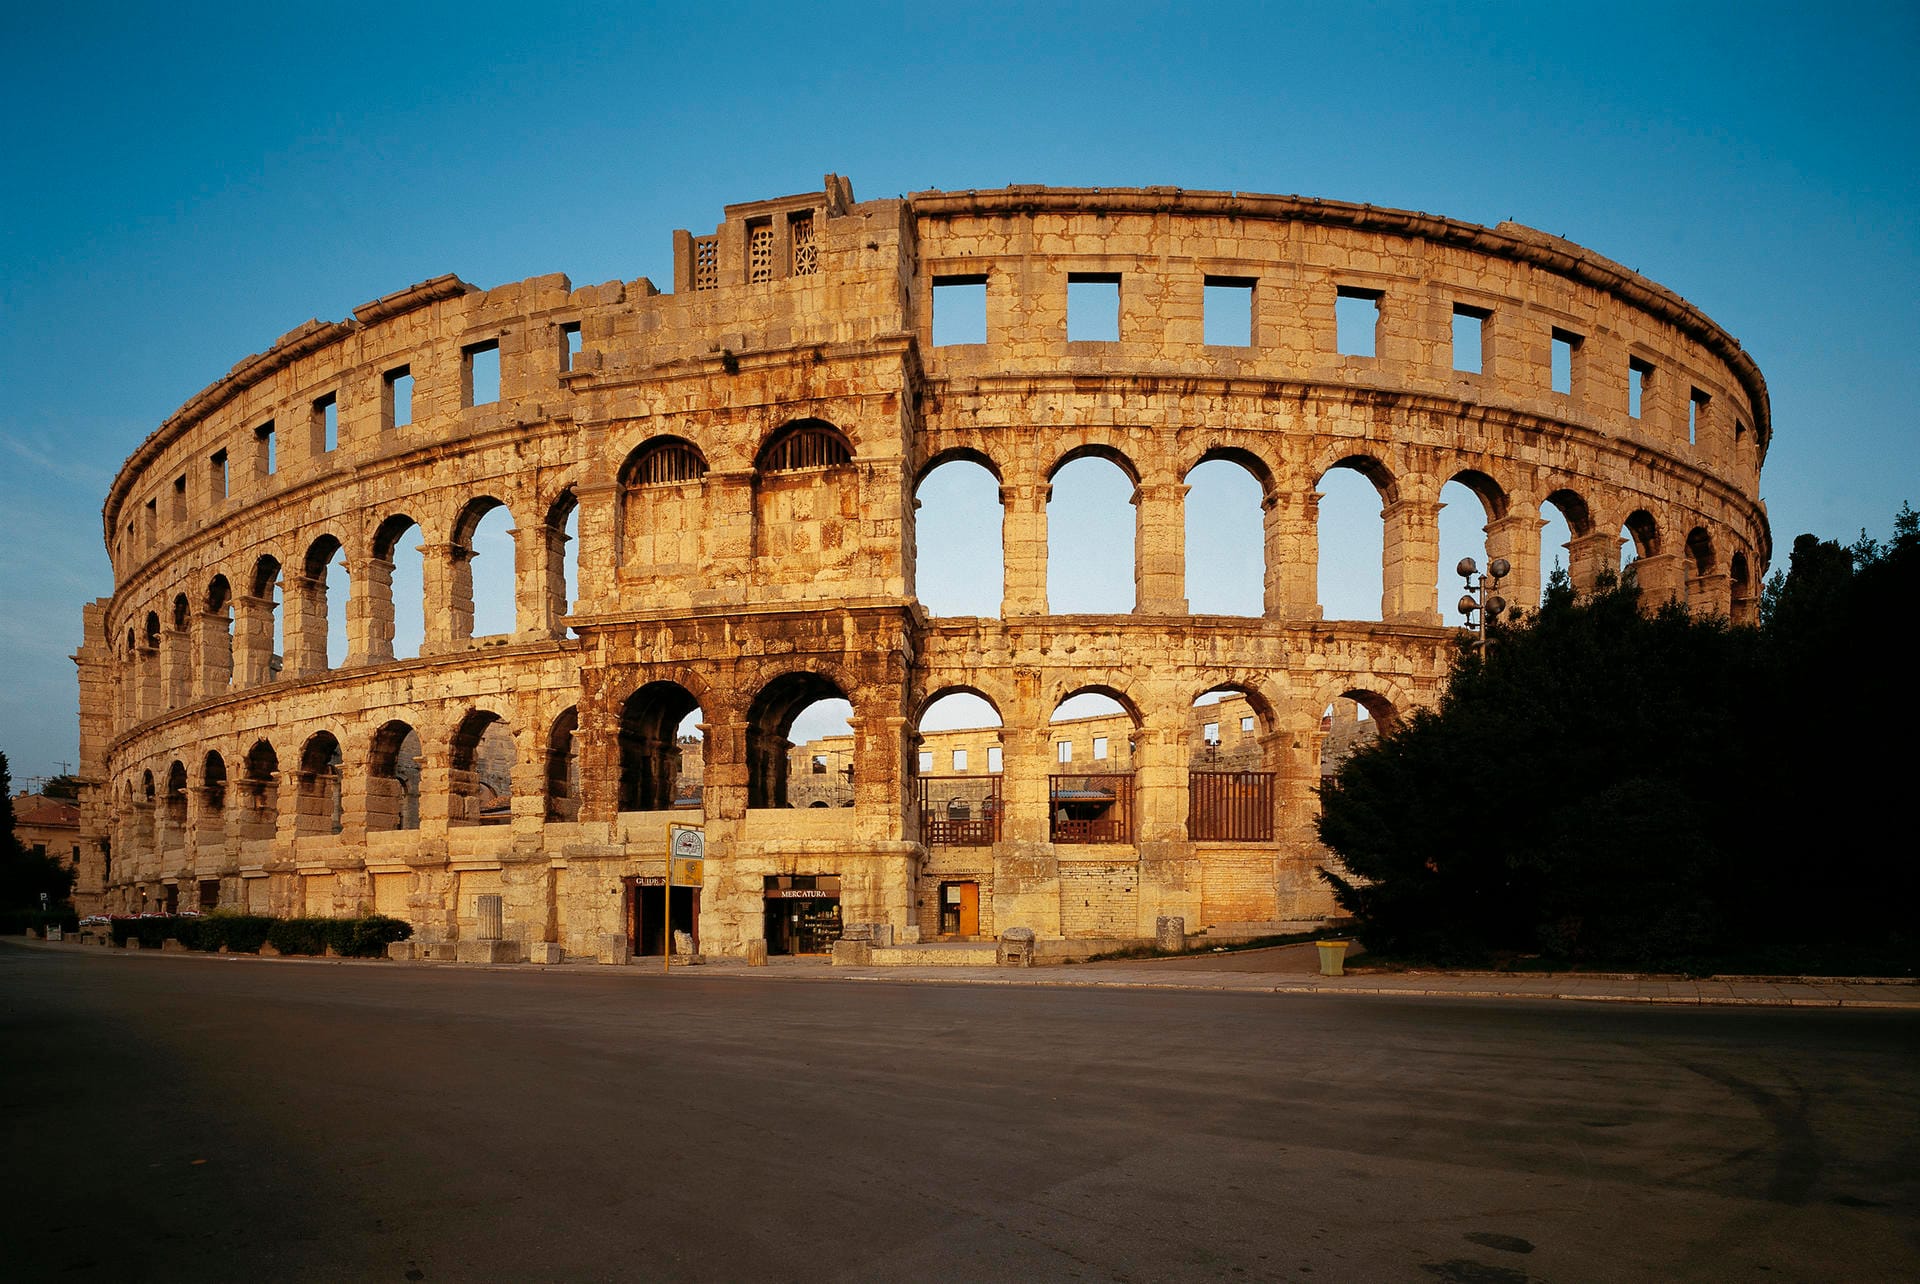 Pula ist eine der ältesten Städte im Süden Istriens. Hauptattraktion ist das römische Amphitheater.